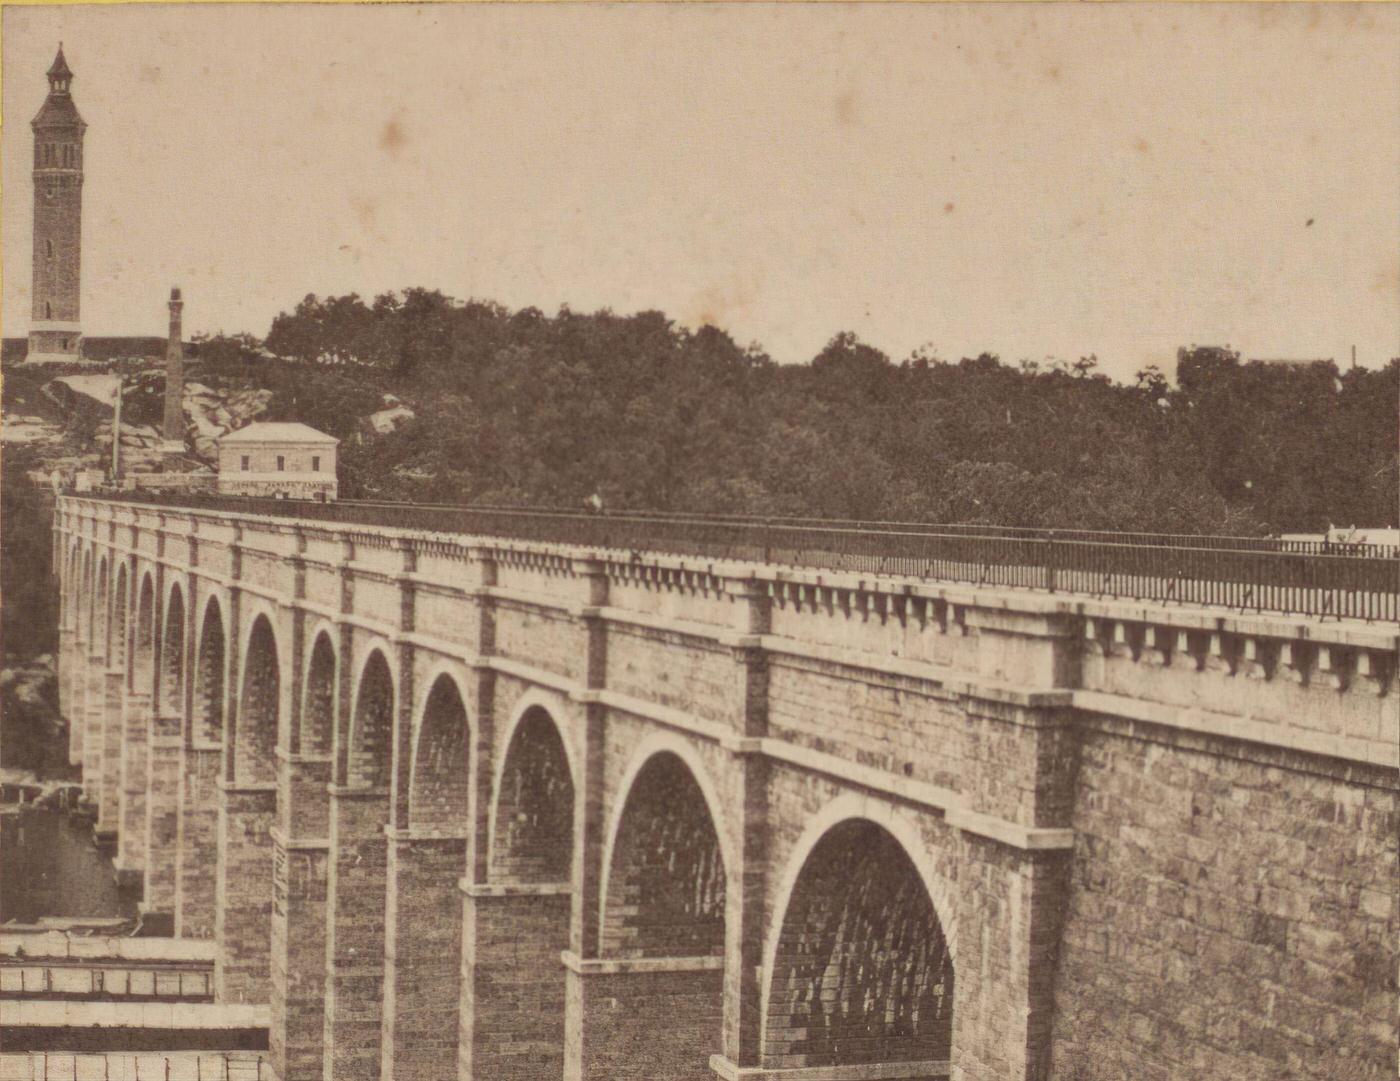 High Bridge, Harlem, New York City, 1870